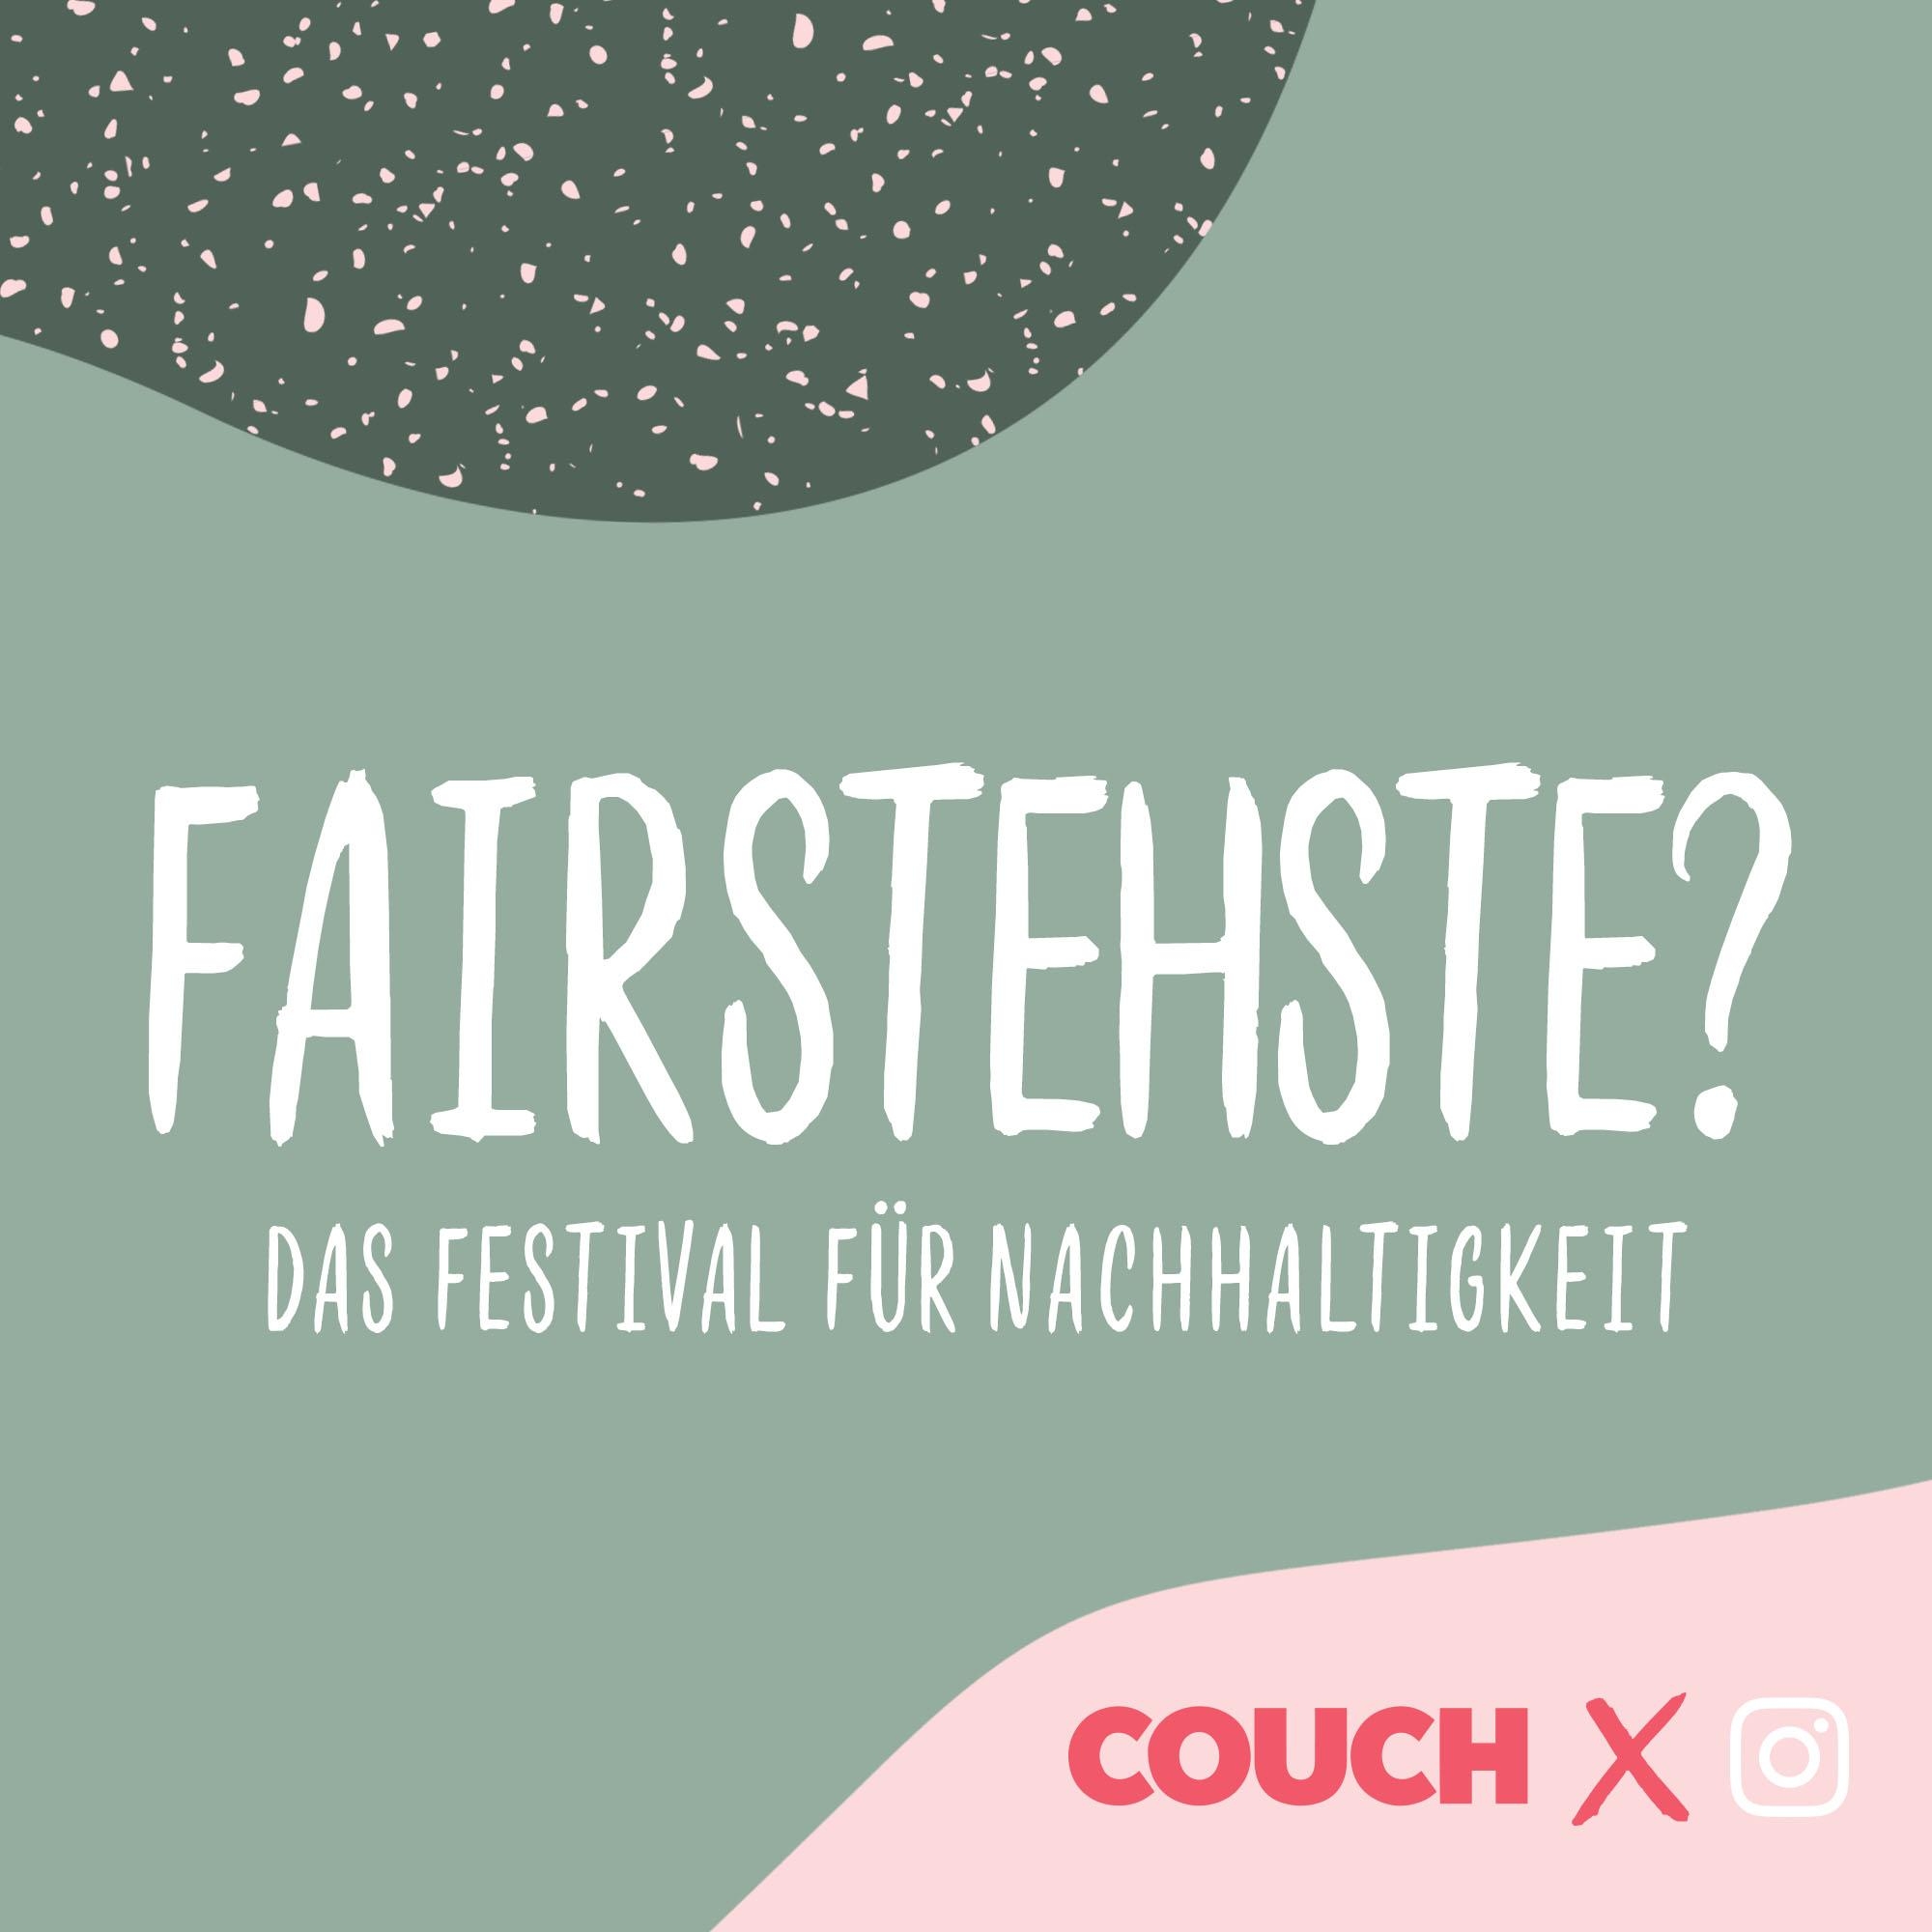 #fairstehste – das Festival für Nachhaltigkeit. Diese Woche auf unserem Instagram-Kanal!